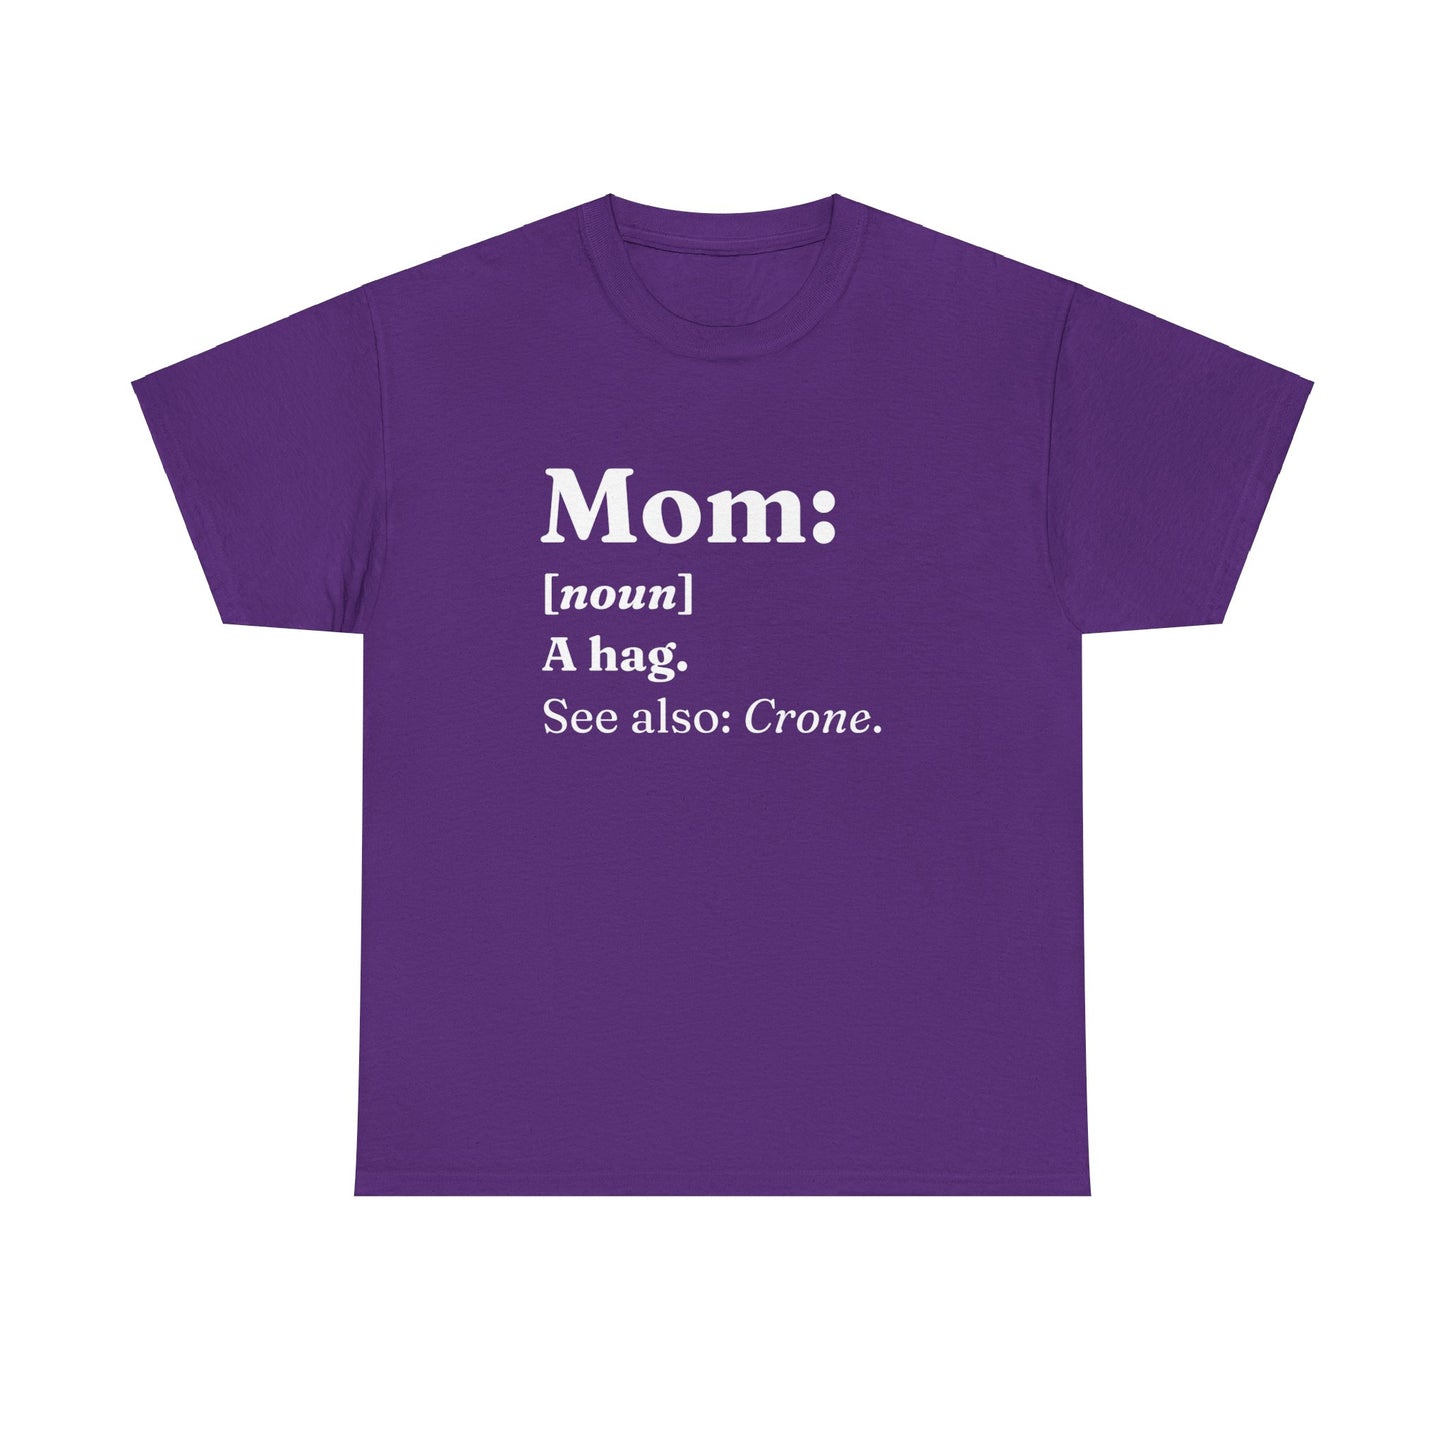 "Mom" Dictionary Definition Shirt